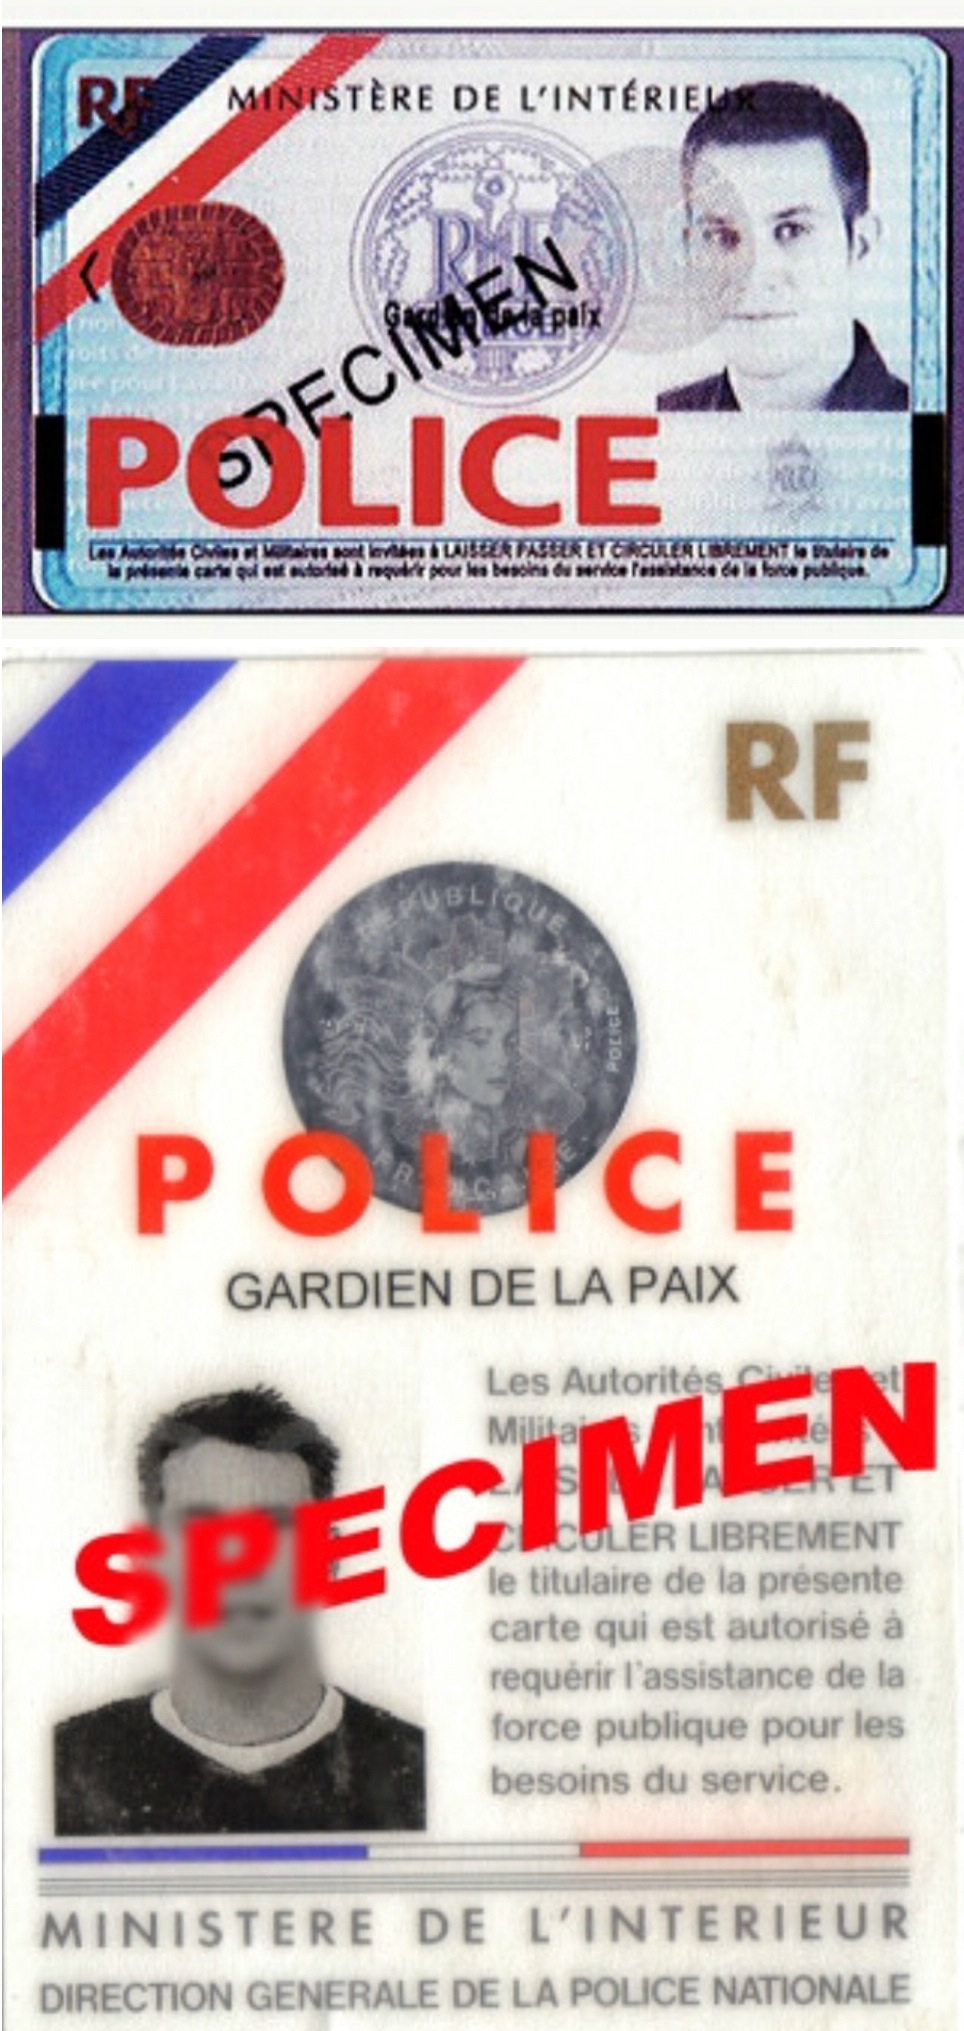 法国连发多起假警察持枪劫案 注意鉴别真伪证件